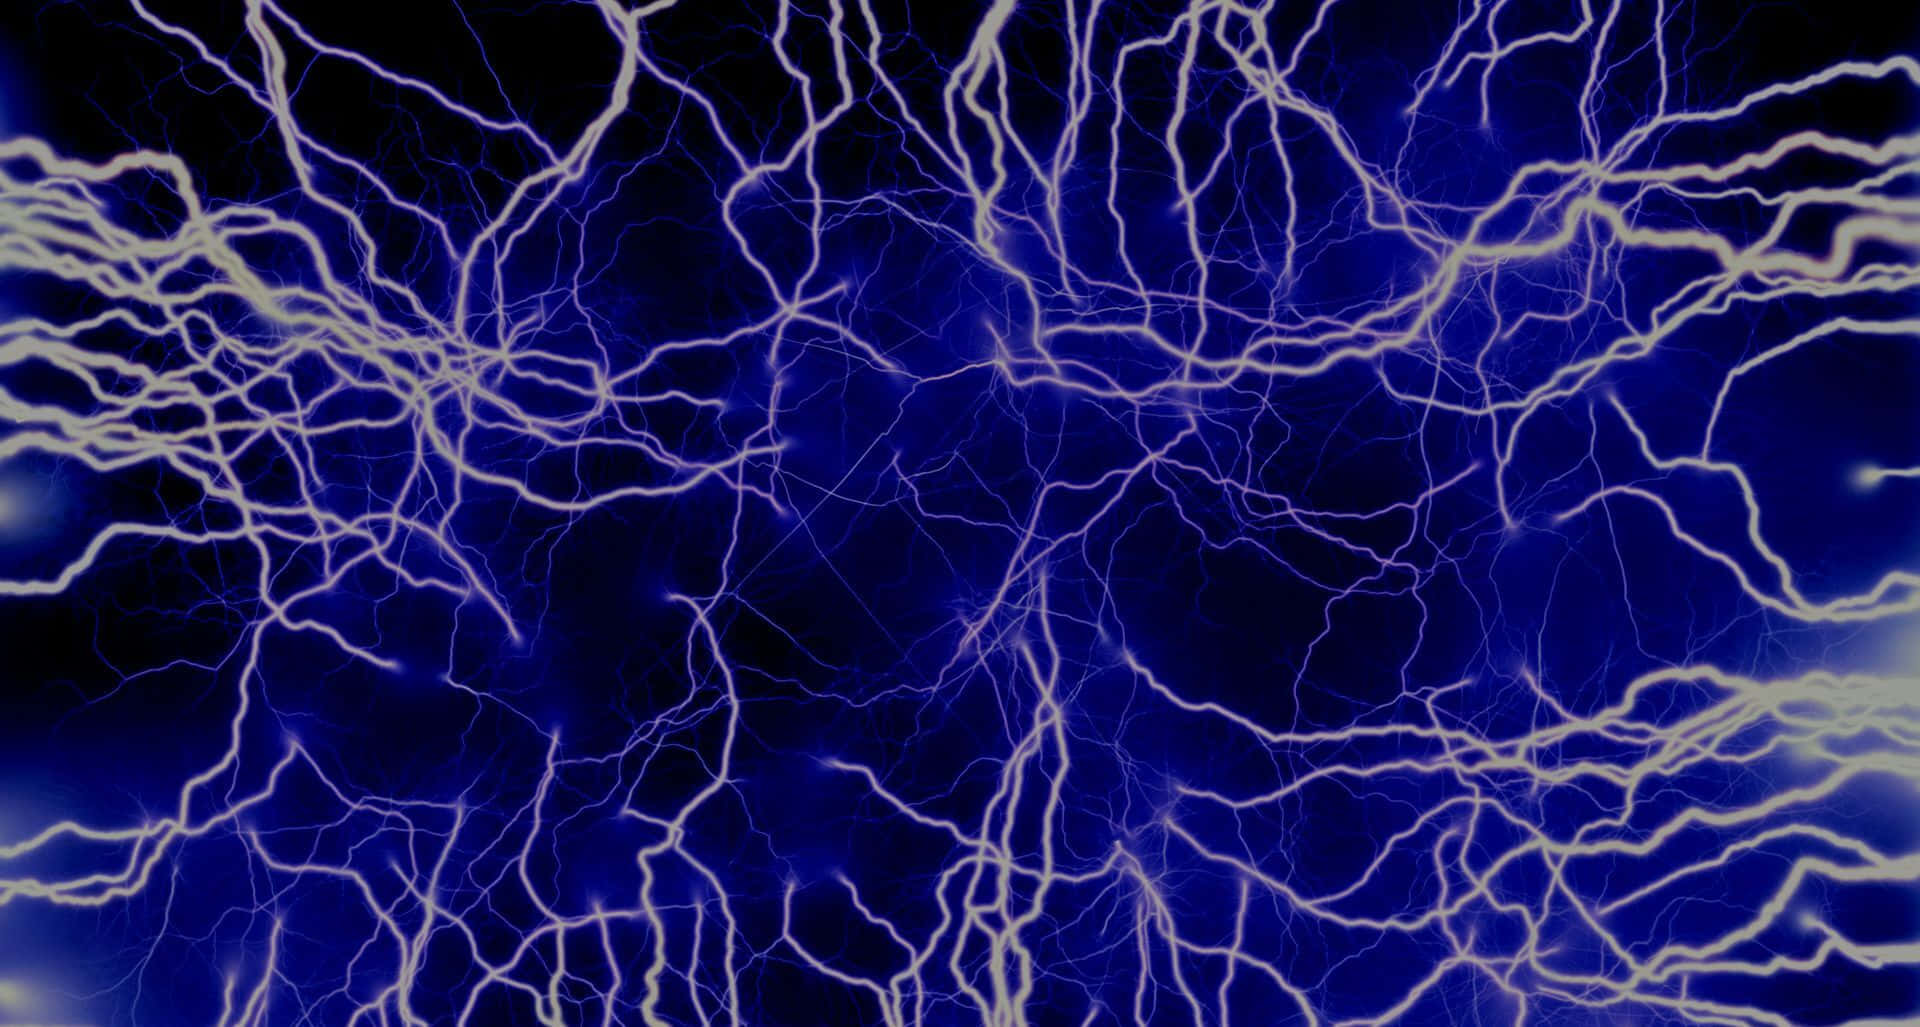 Wunderschöneelektrisch Blaue Funken Bilden Eine Faszinierende Darstellung.